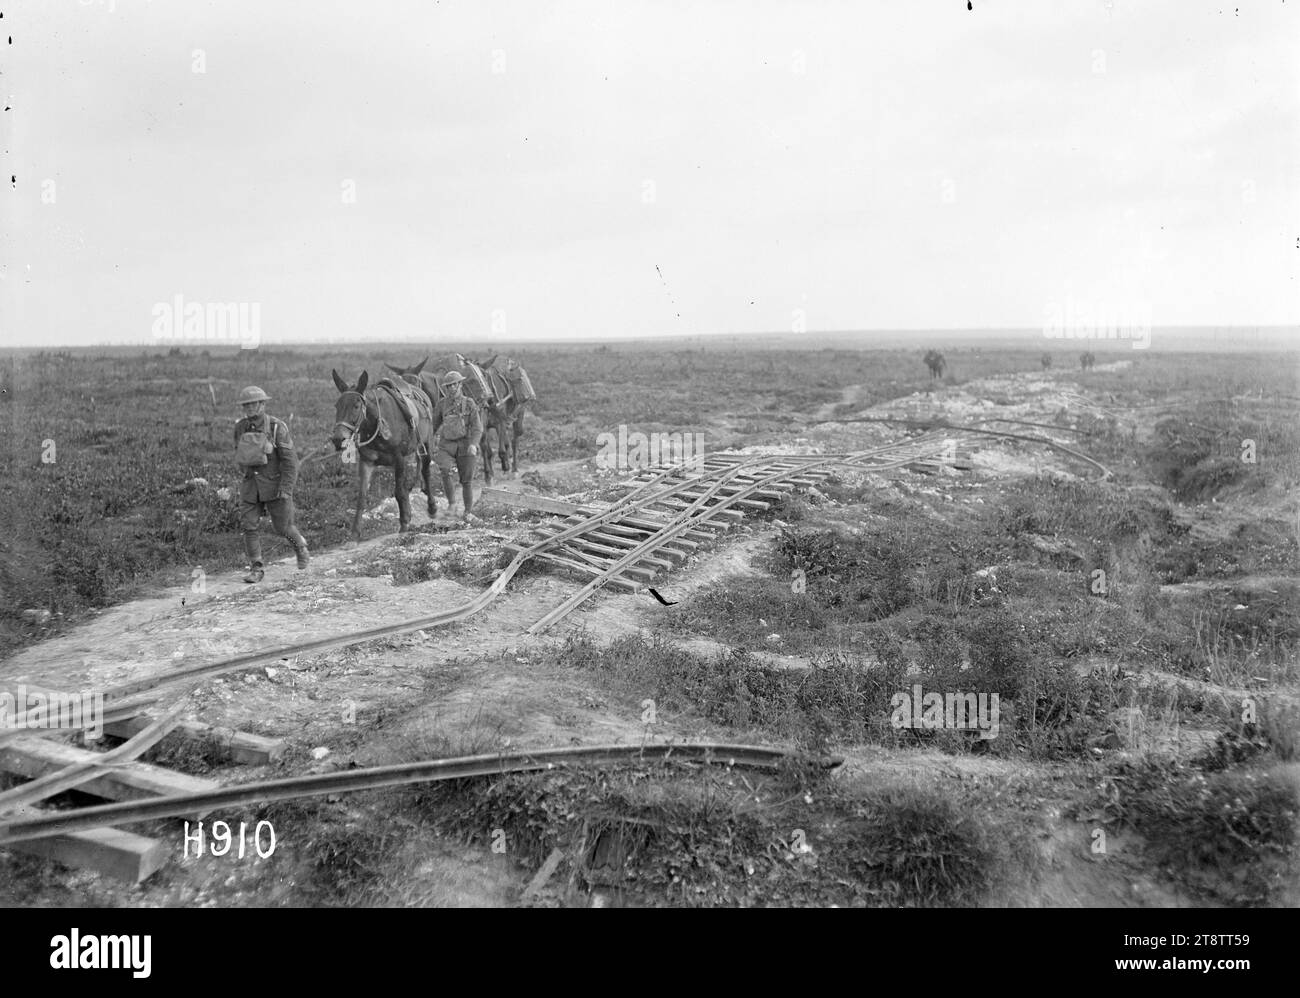 Eine deutsche Stadtbahn, die im Ersten Weltkrieg in Frankreich zerstört wurde, führen zwei neuseeländische Soldaten Pferde an den zerstörten Gleisen einer deutschen Leichtbahn bei Serre, Frankreich, vorbei Foto vom 21. August 1918 Stockfoto